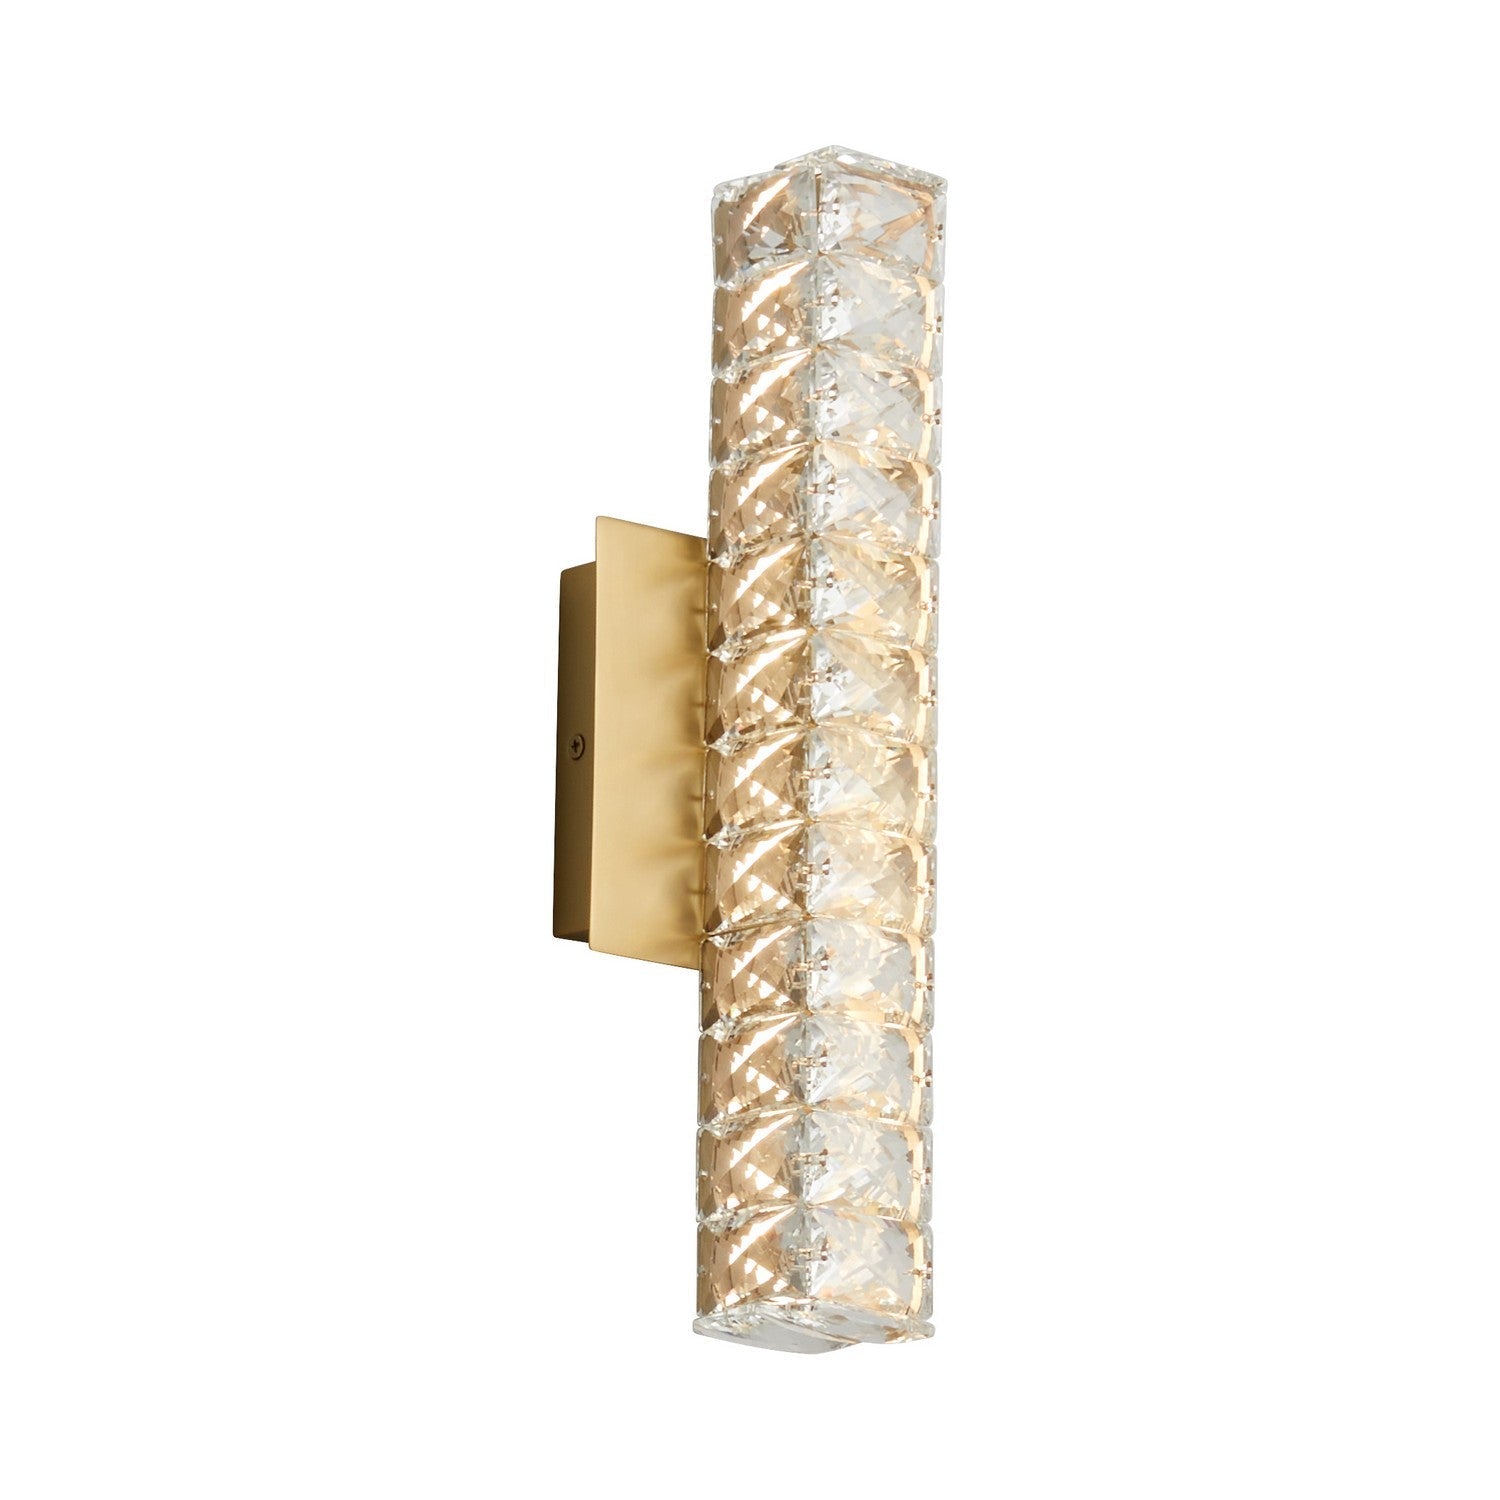 Oxygen Elan 3-572-40 Modern Sconce LED Wall Light Fixture- Aged Brass